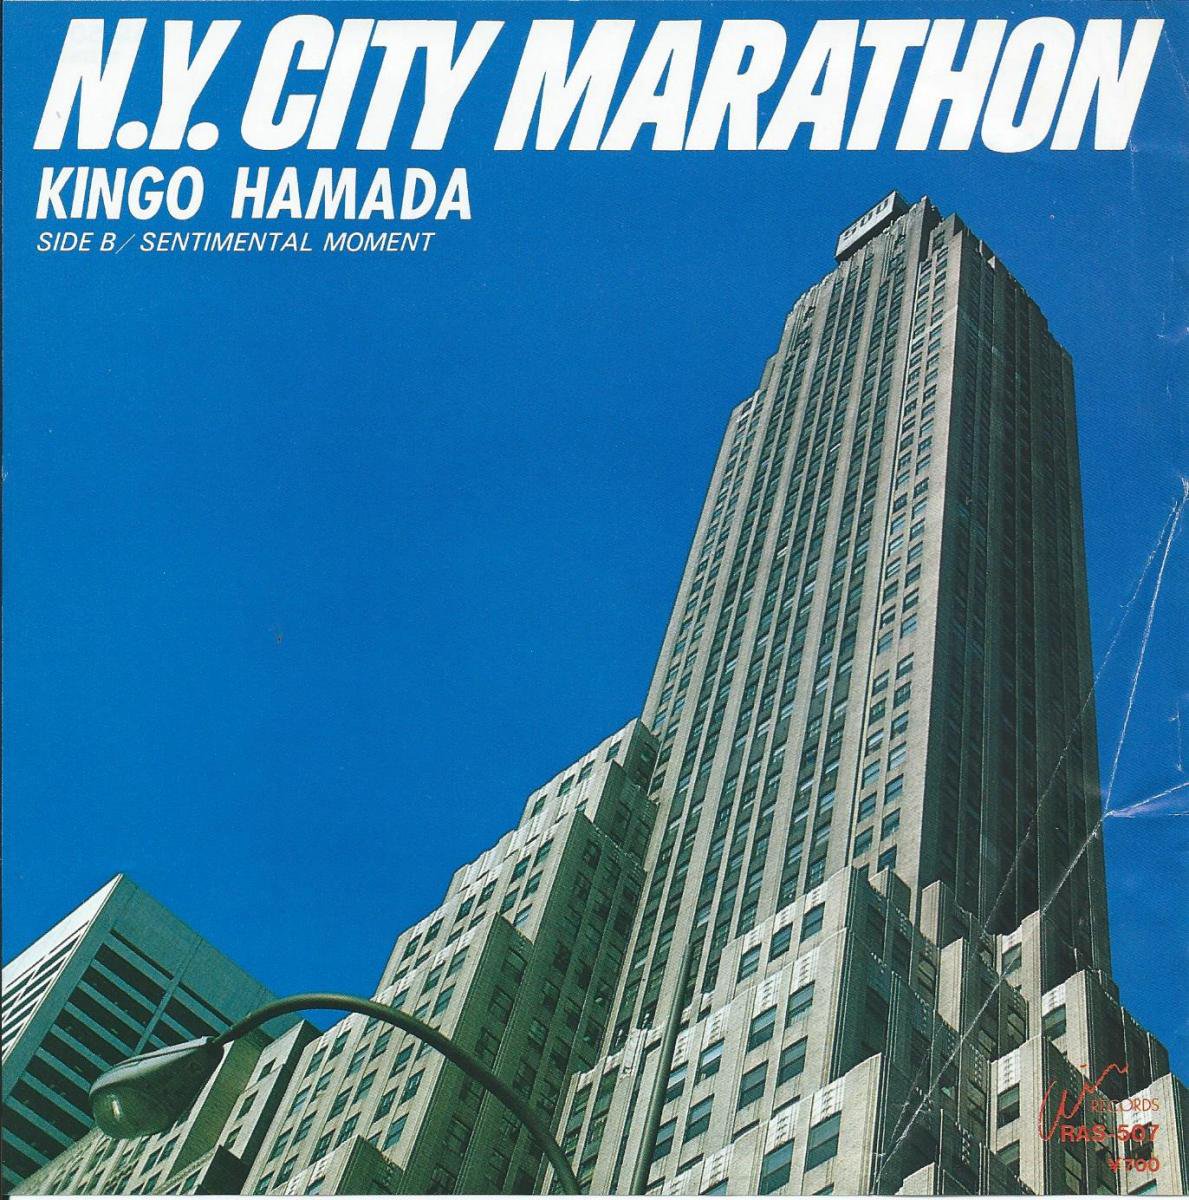 浜田金吾 KINGO HAMADA / N.Y. CITY MARATHON / SENTIMENTAL MOMENT (7